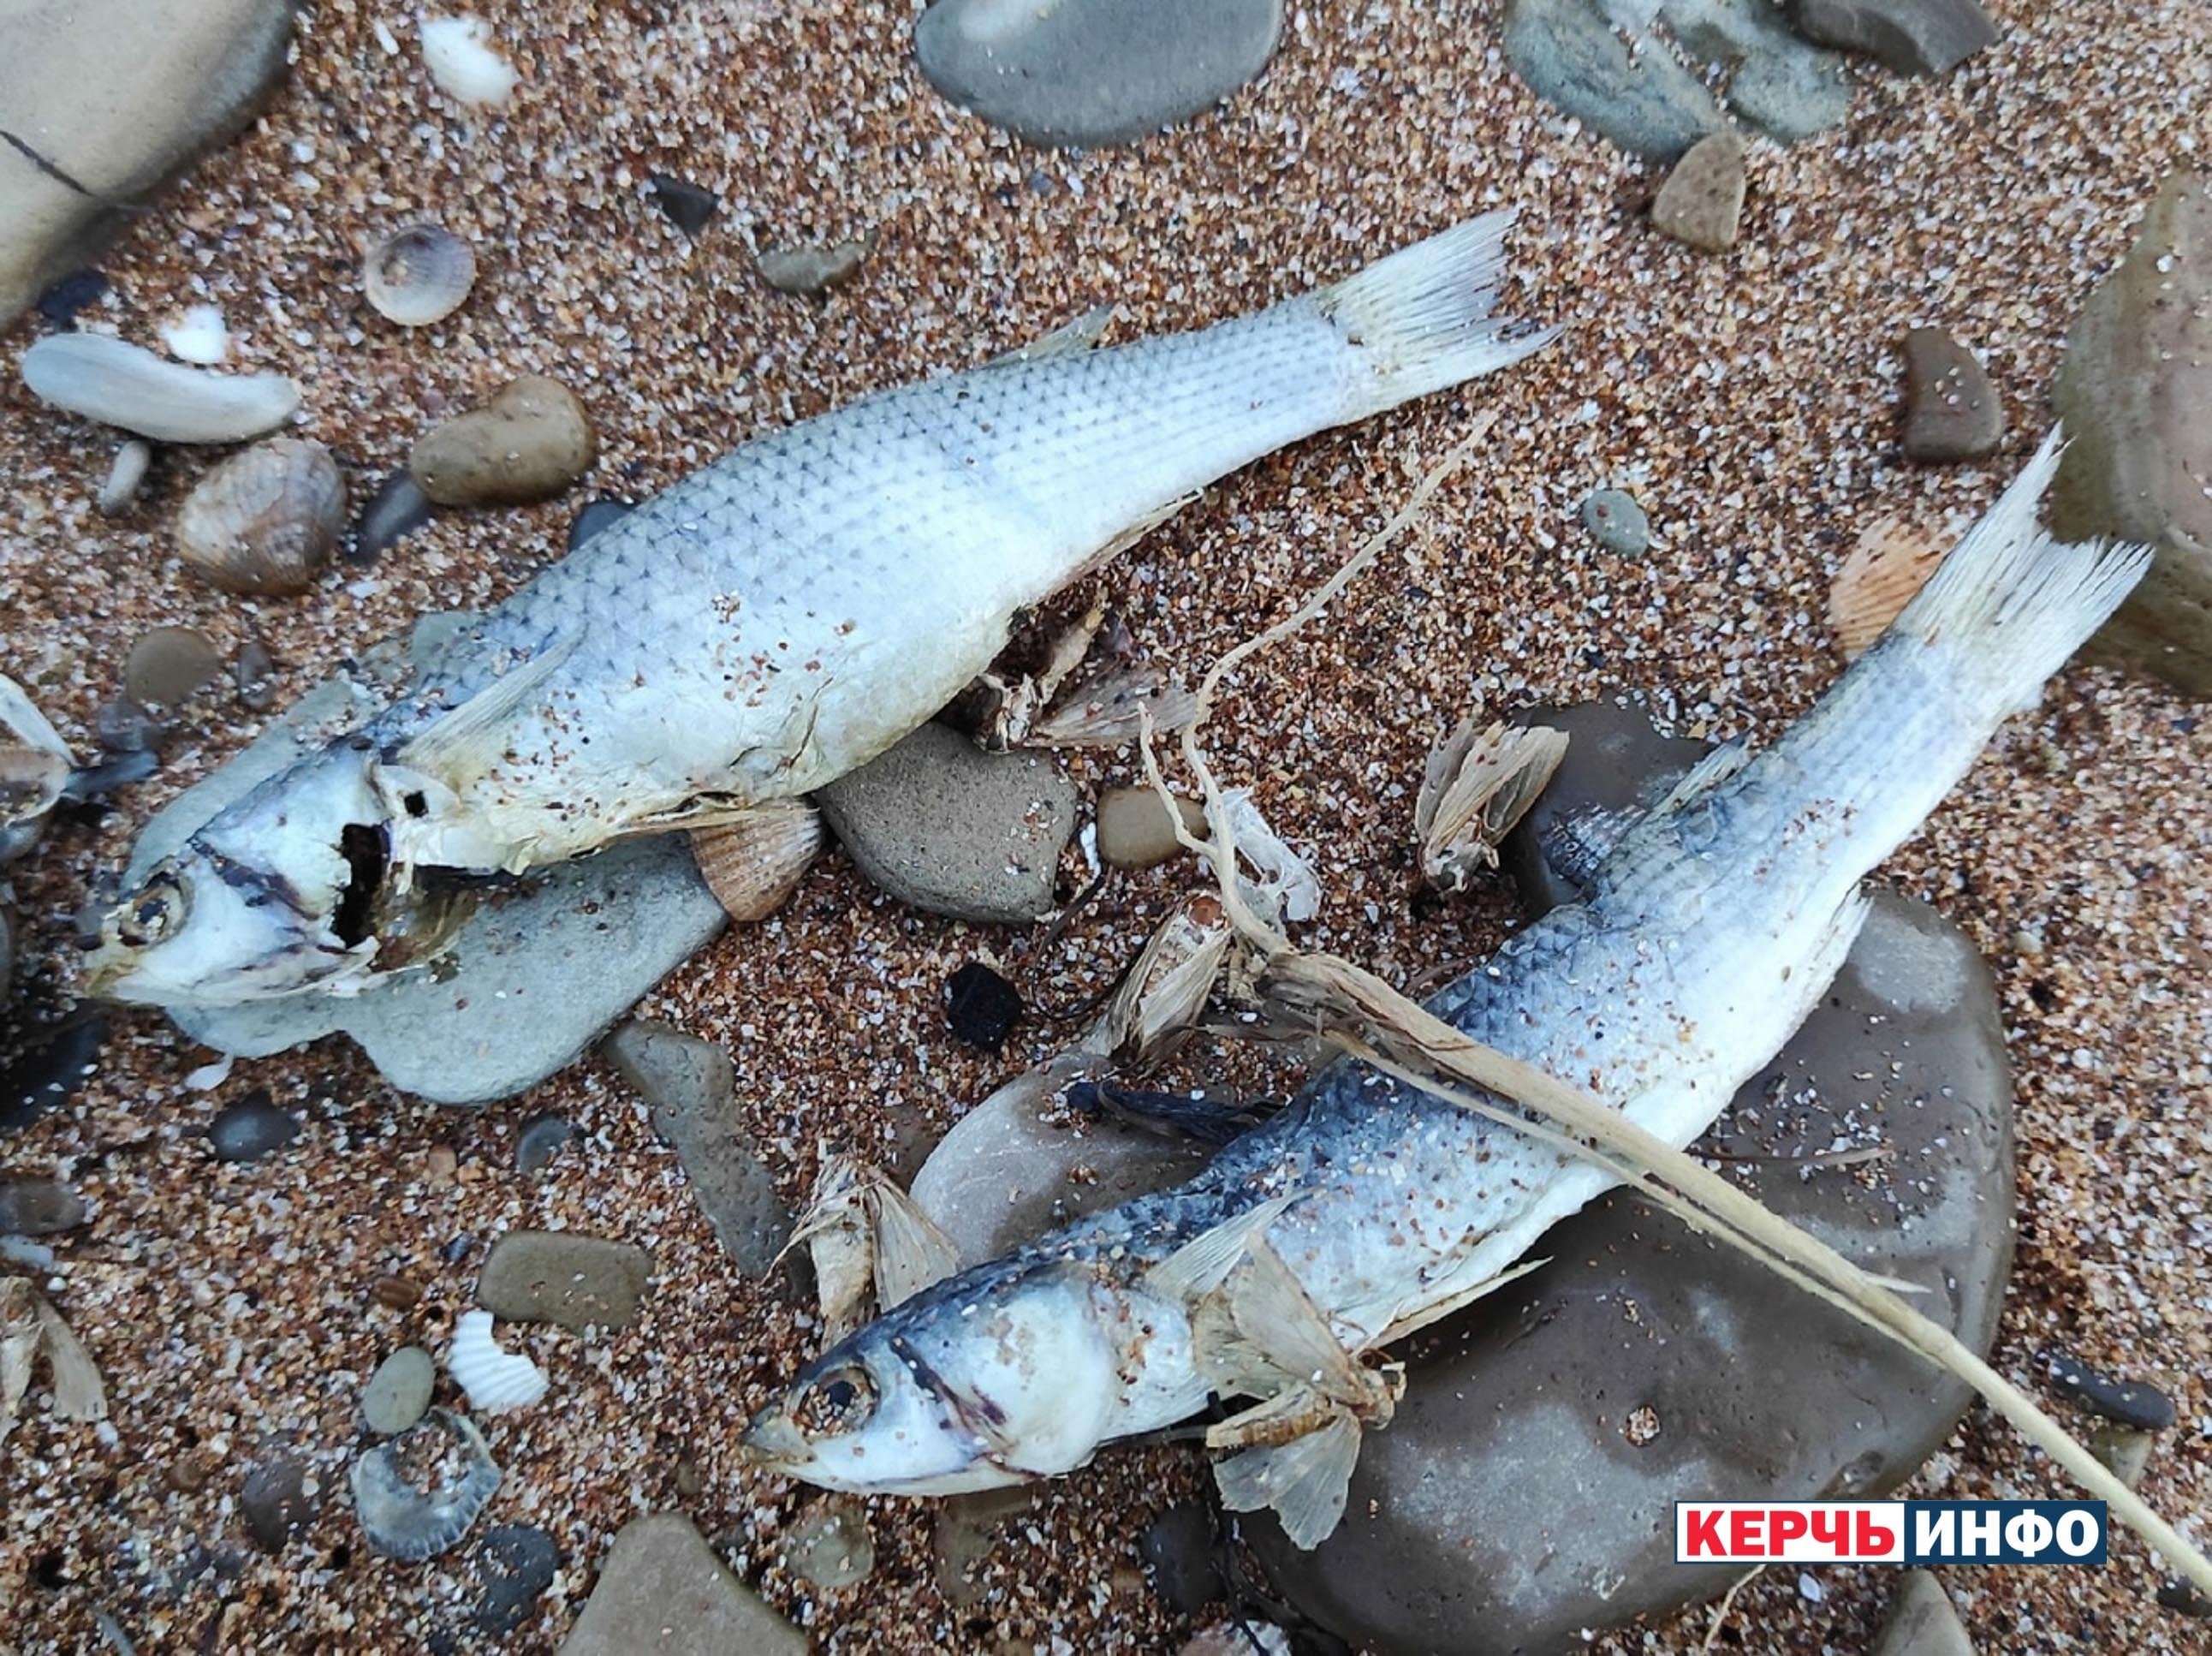 какая рыба есть в азовском море